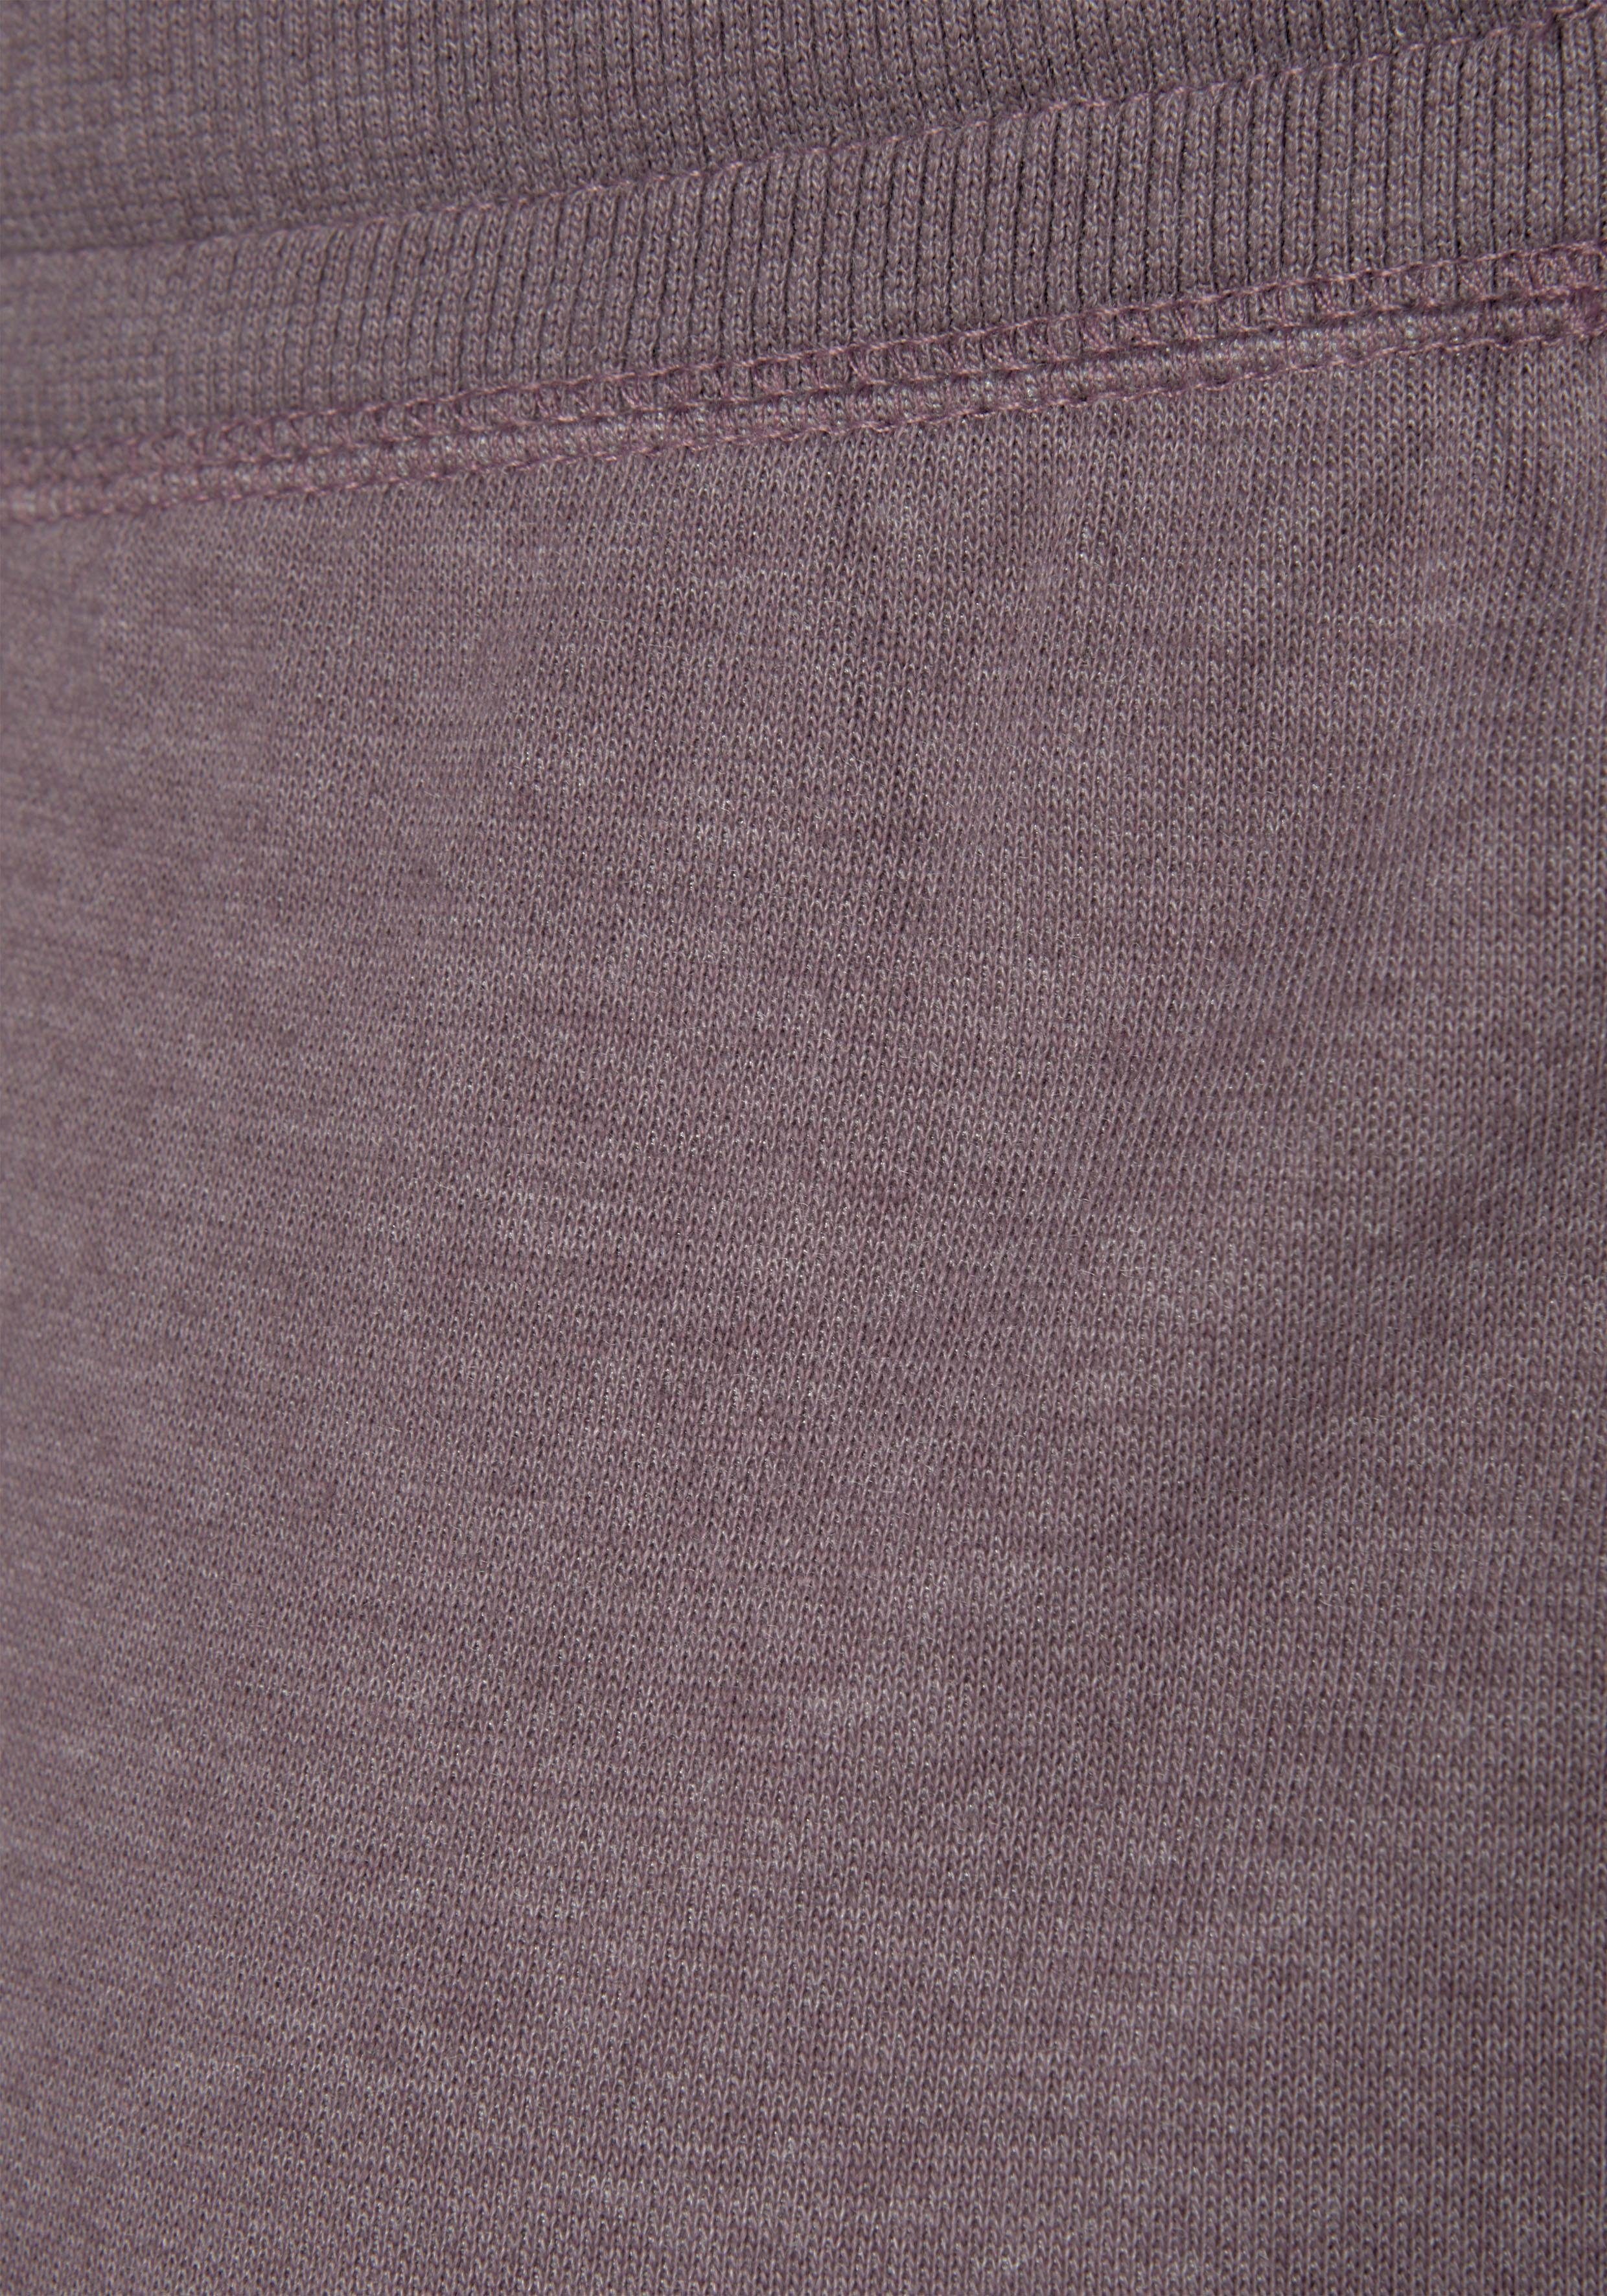 mauve-meliert und seitlichen mit aufgeschlagenen -kurze Sweathose Beinsäumen Loungewear Bench. Taschen Bermudas